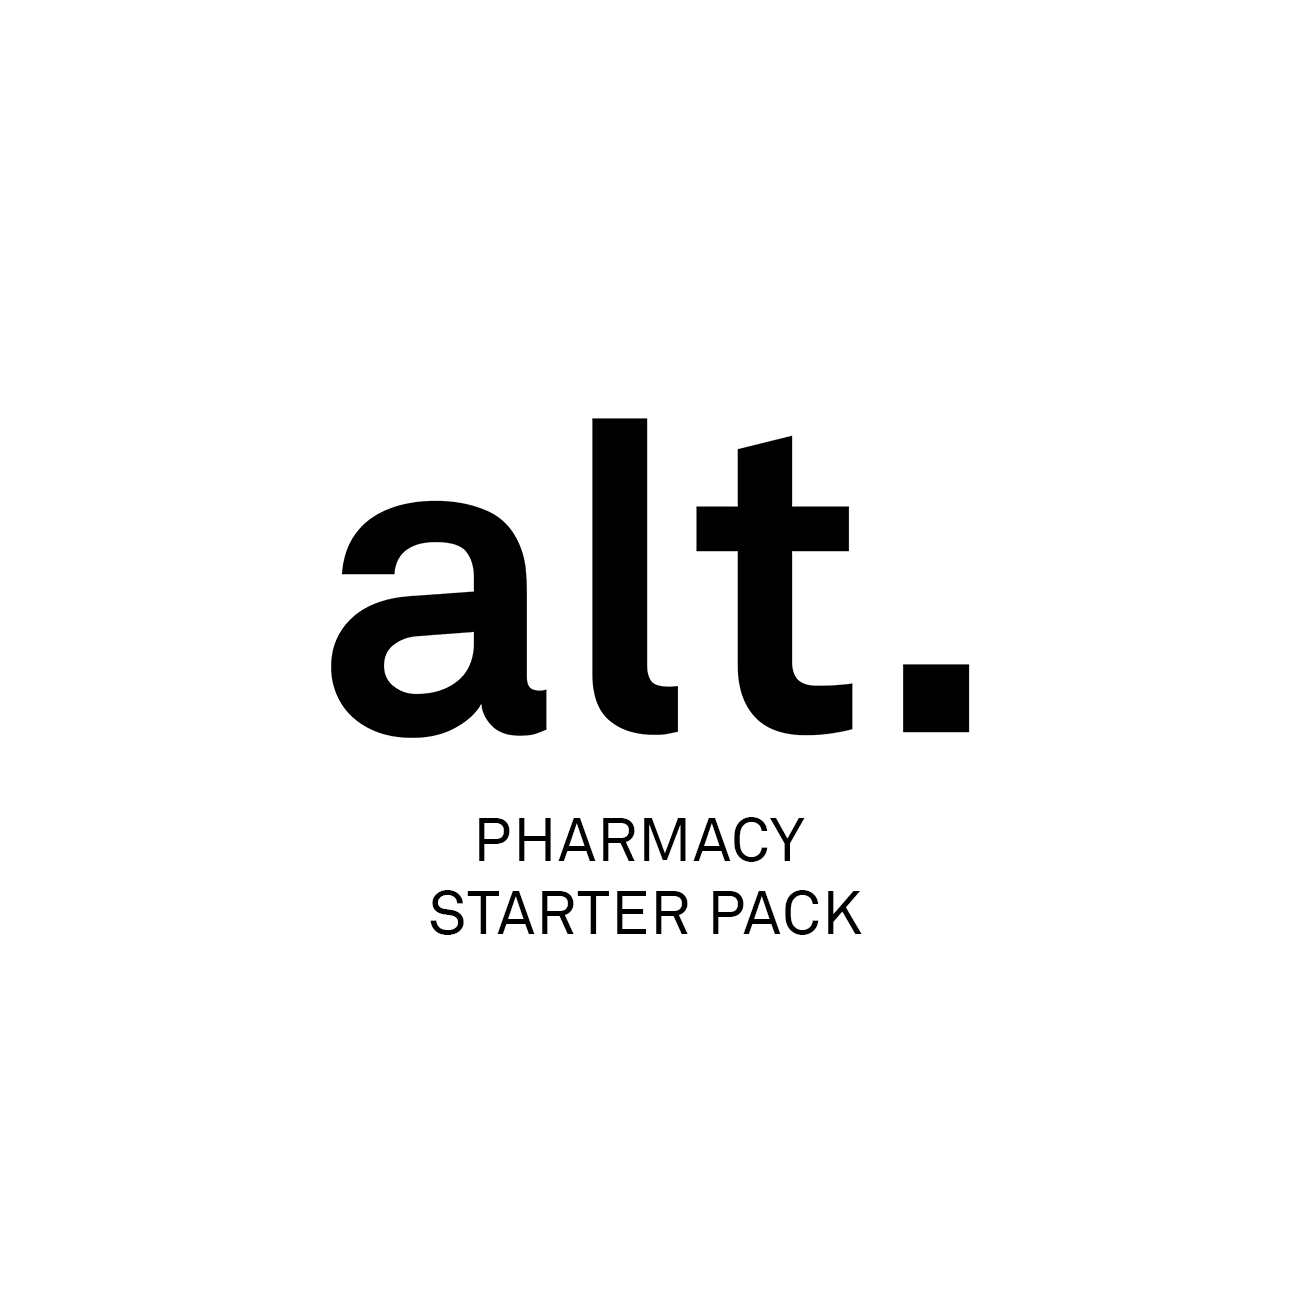 Pharmacy Starter Pack